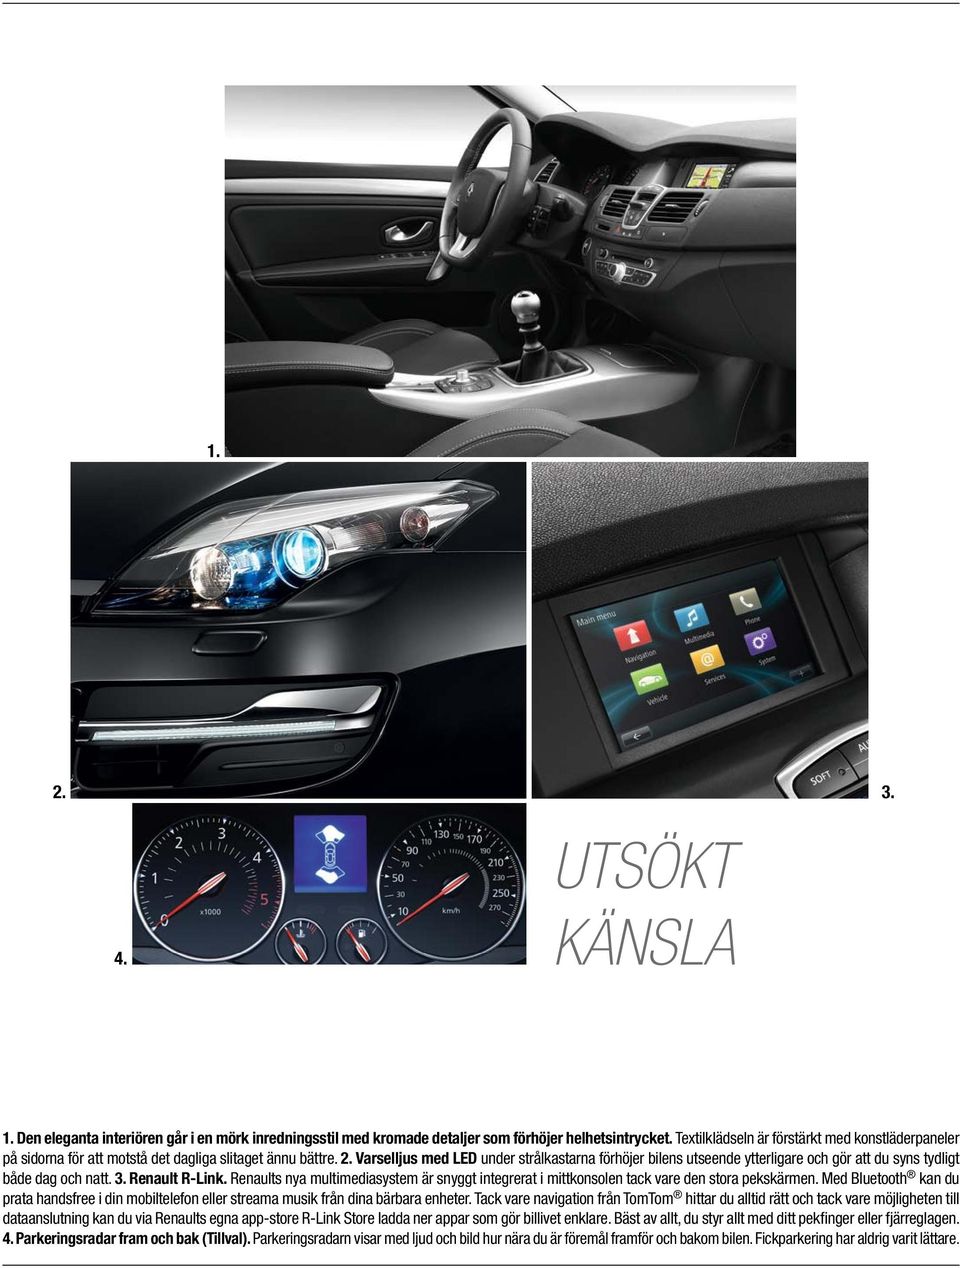 Varselljus med LED under strålkastarna förhöjer bilens utseende ytterligare och gör att du syns tydligt både dag och natt. 3. Renault R-Link.